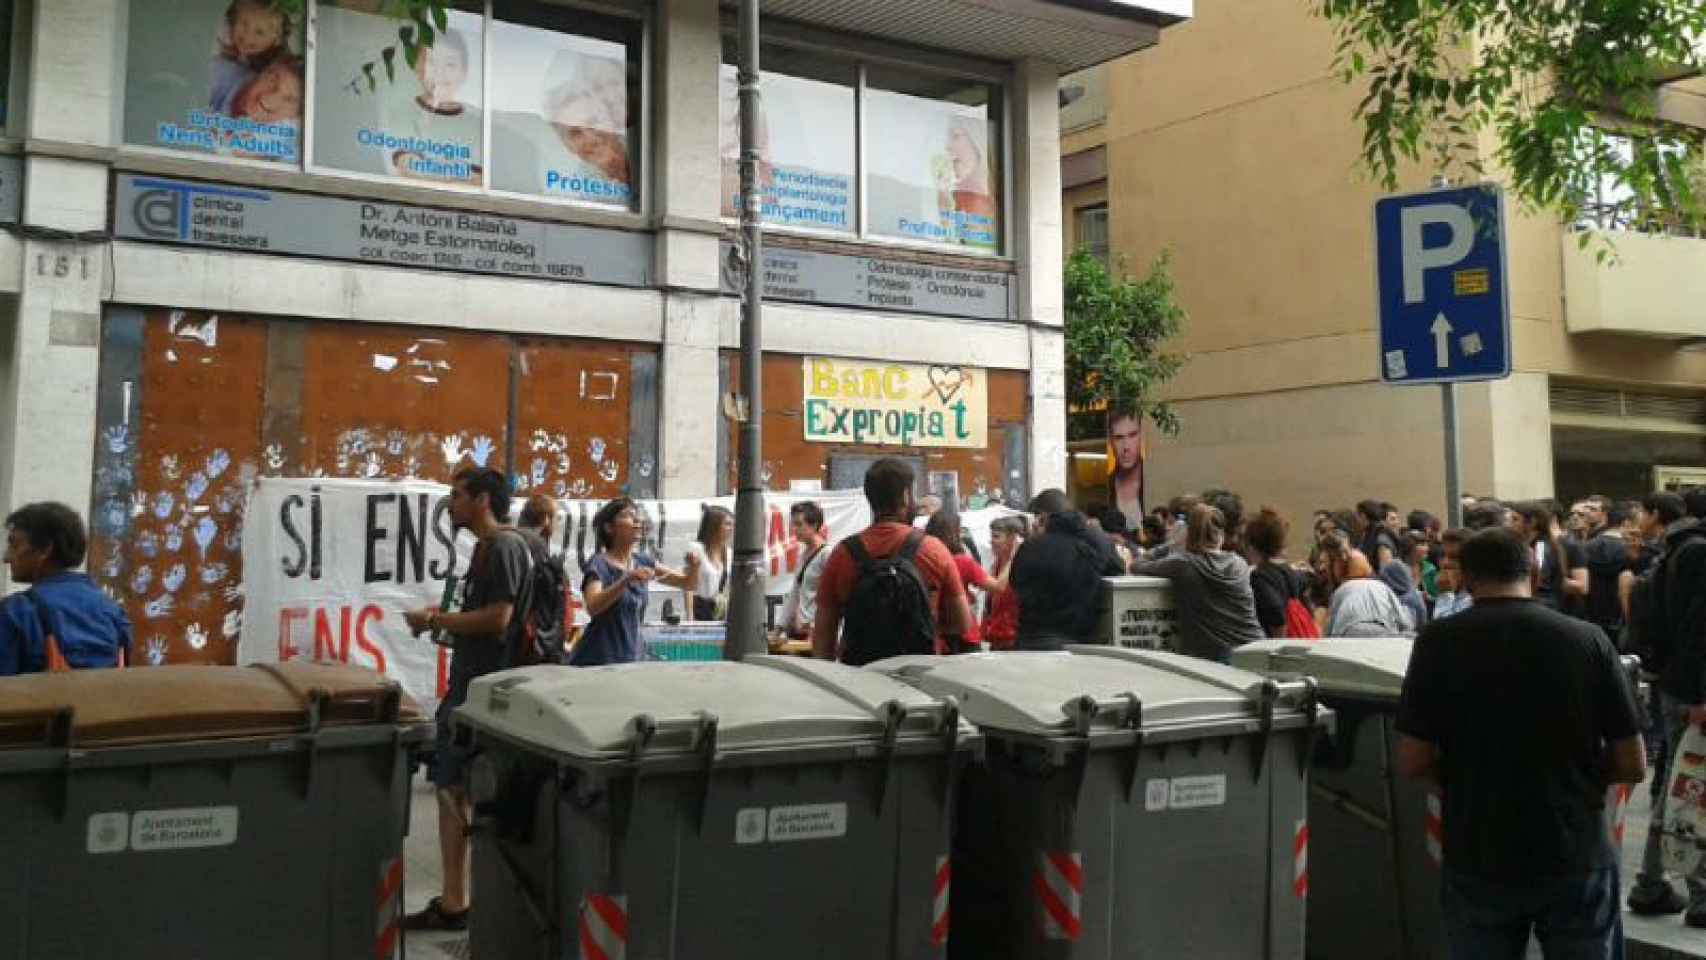 Decenas de personas concentradas en el exterior del edificio del 'Banc Expropiat' en el barrio de Gràcia de Barcelona.